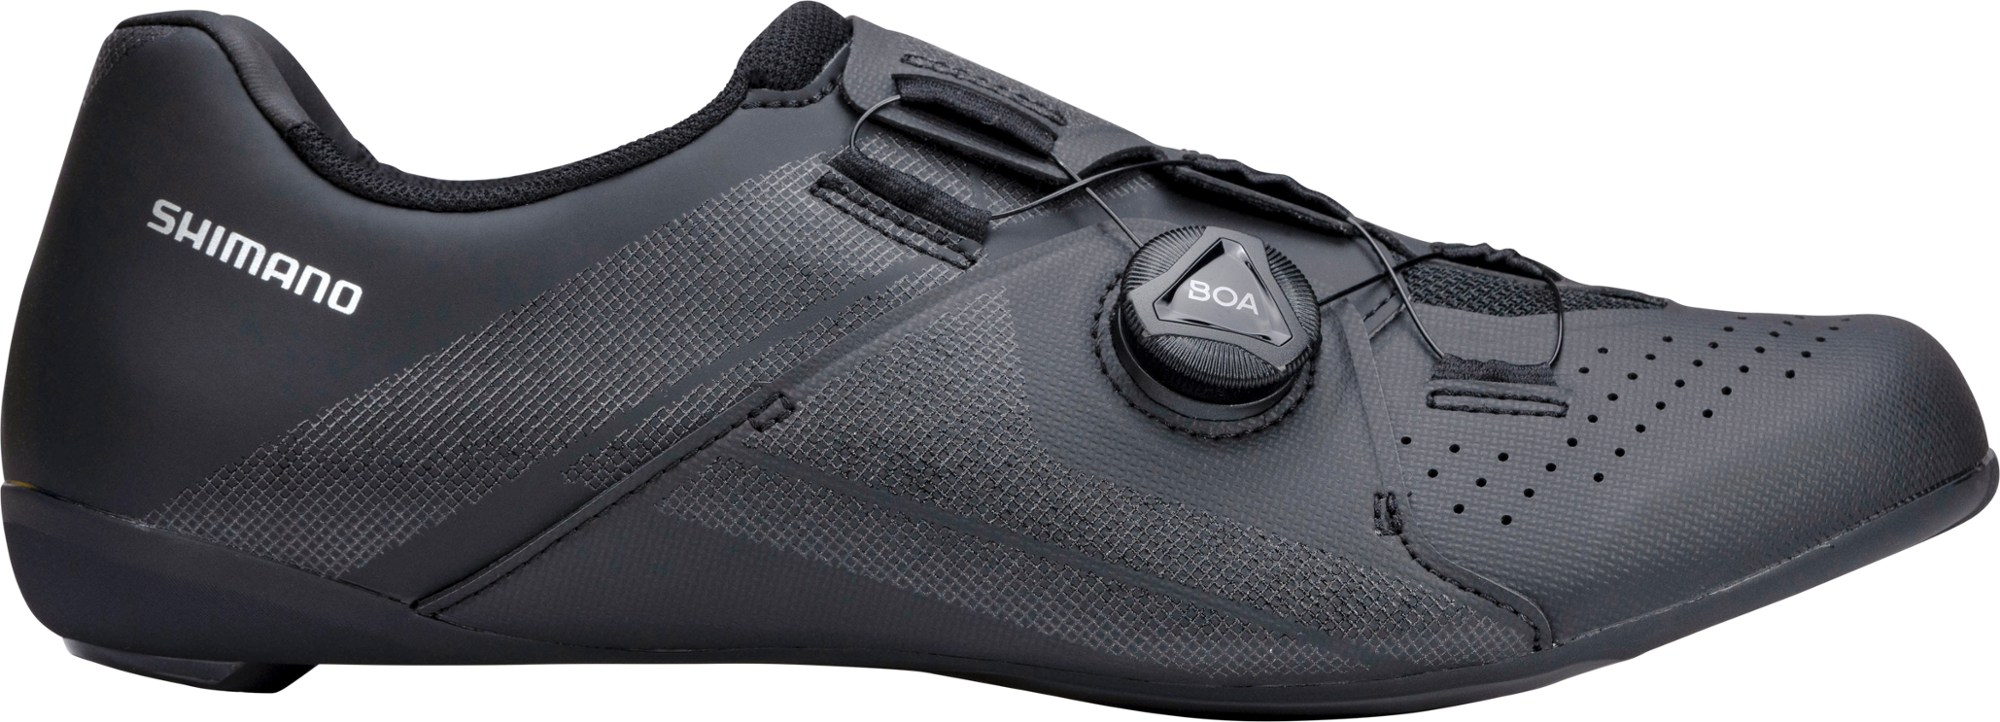 Шоссейные велосипедные туфли RC3 — мужские Shimano, черный